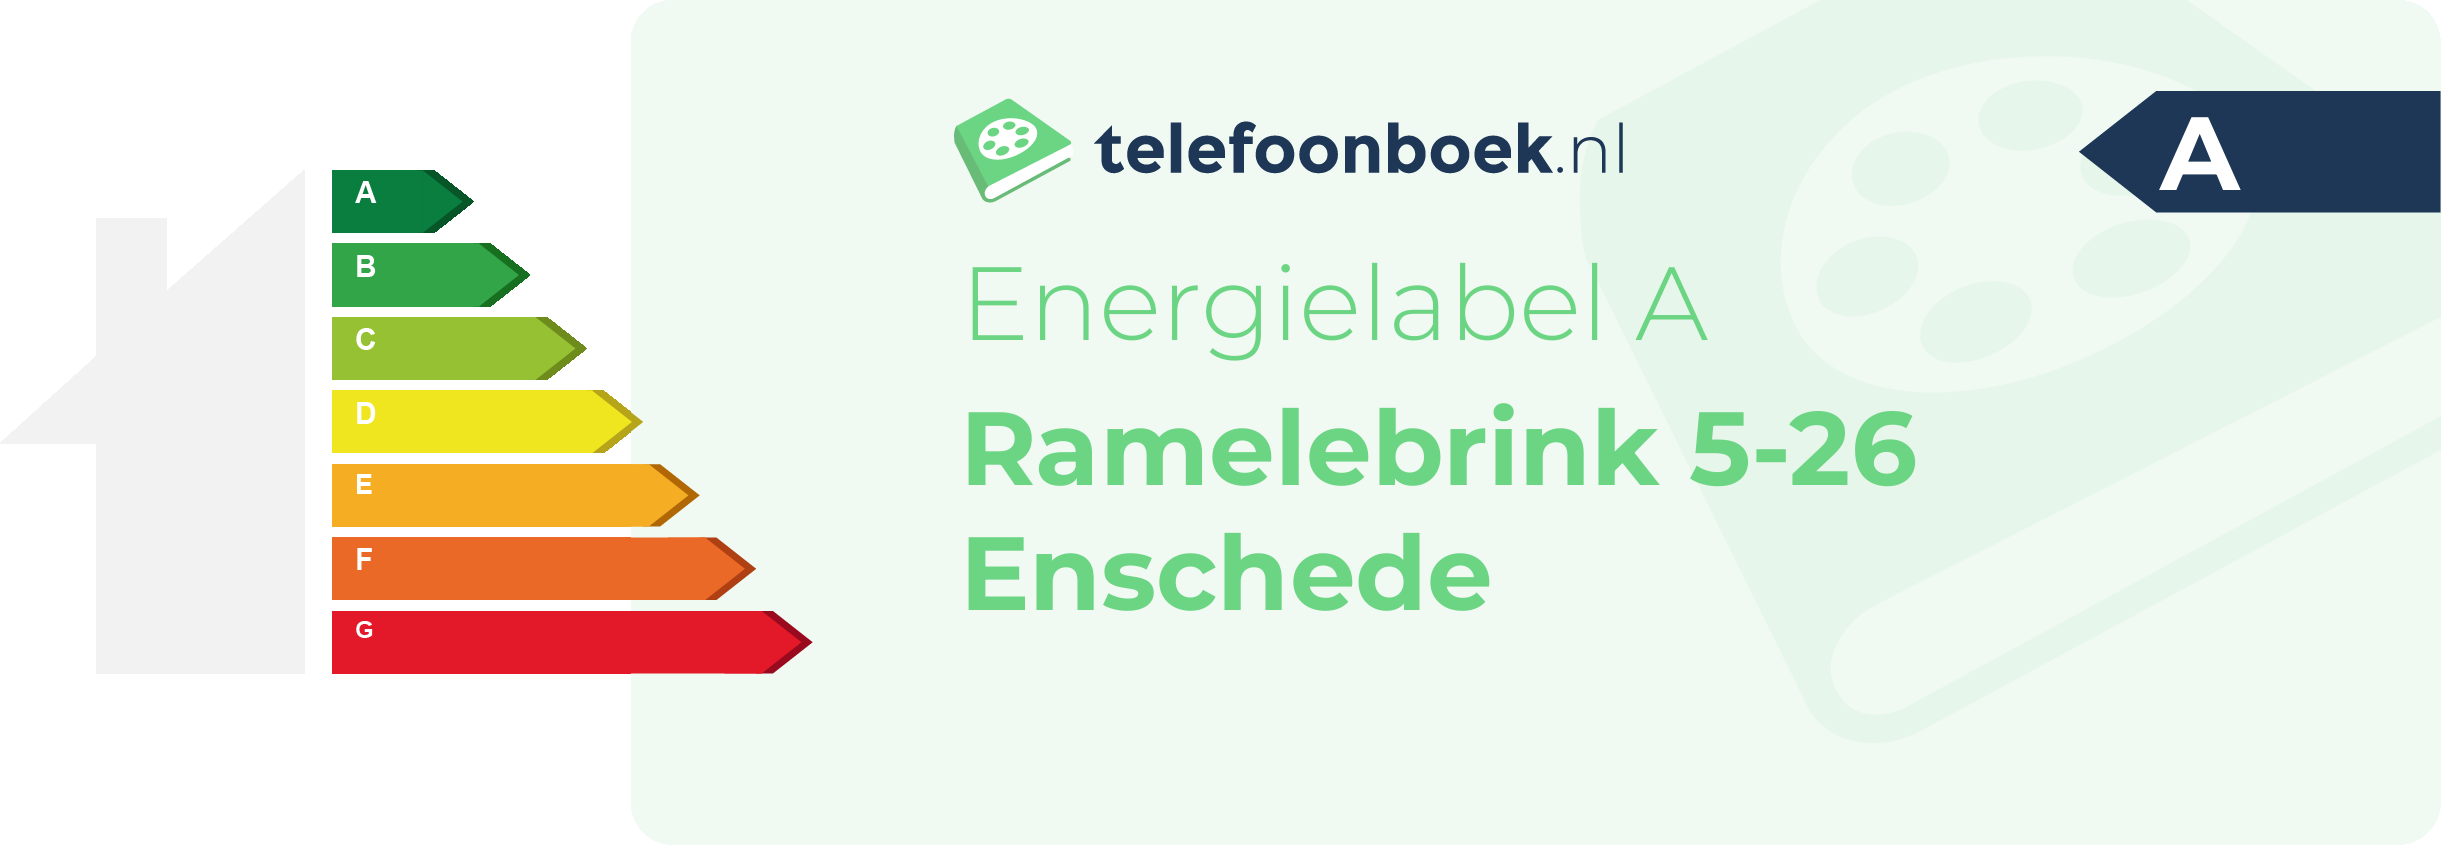 Energielabel Ramelebrink 5-26 Enschede